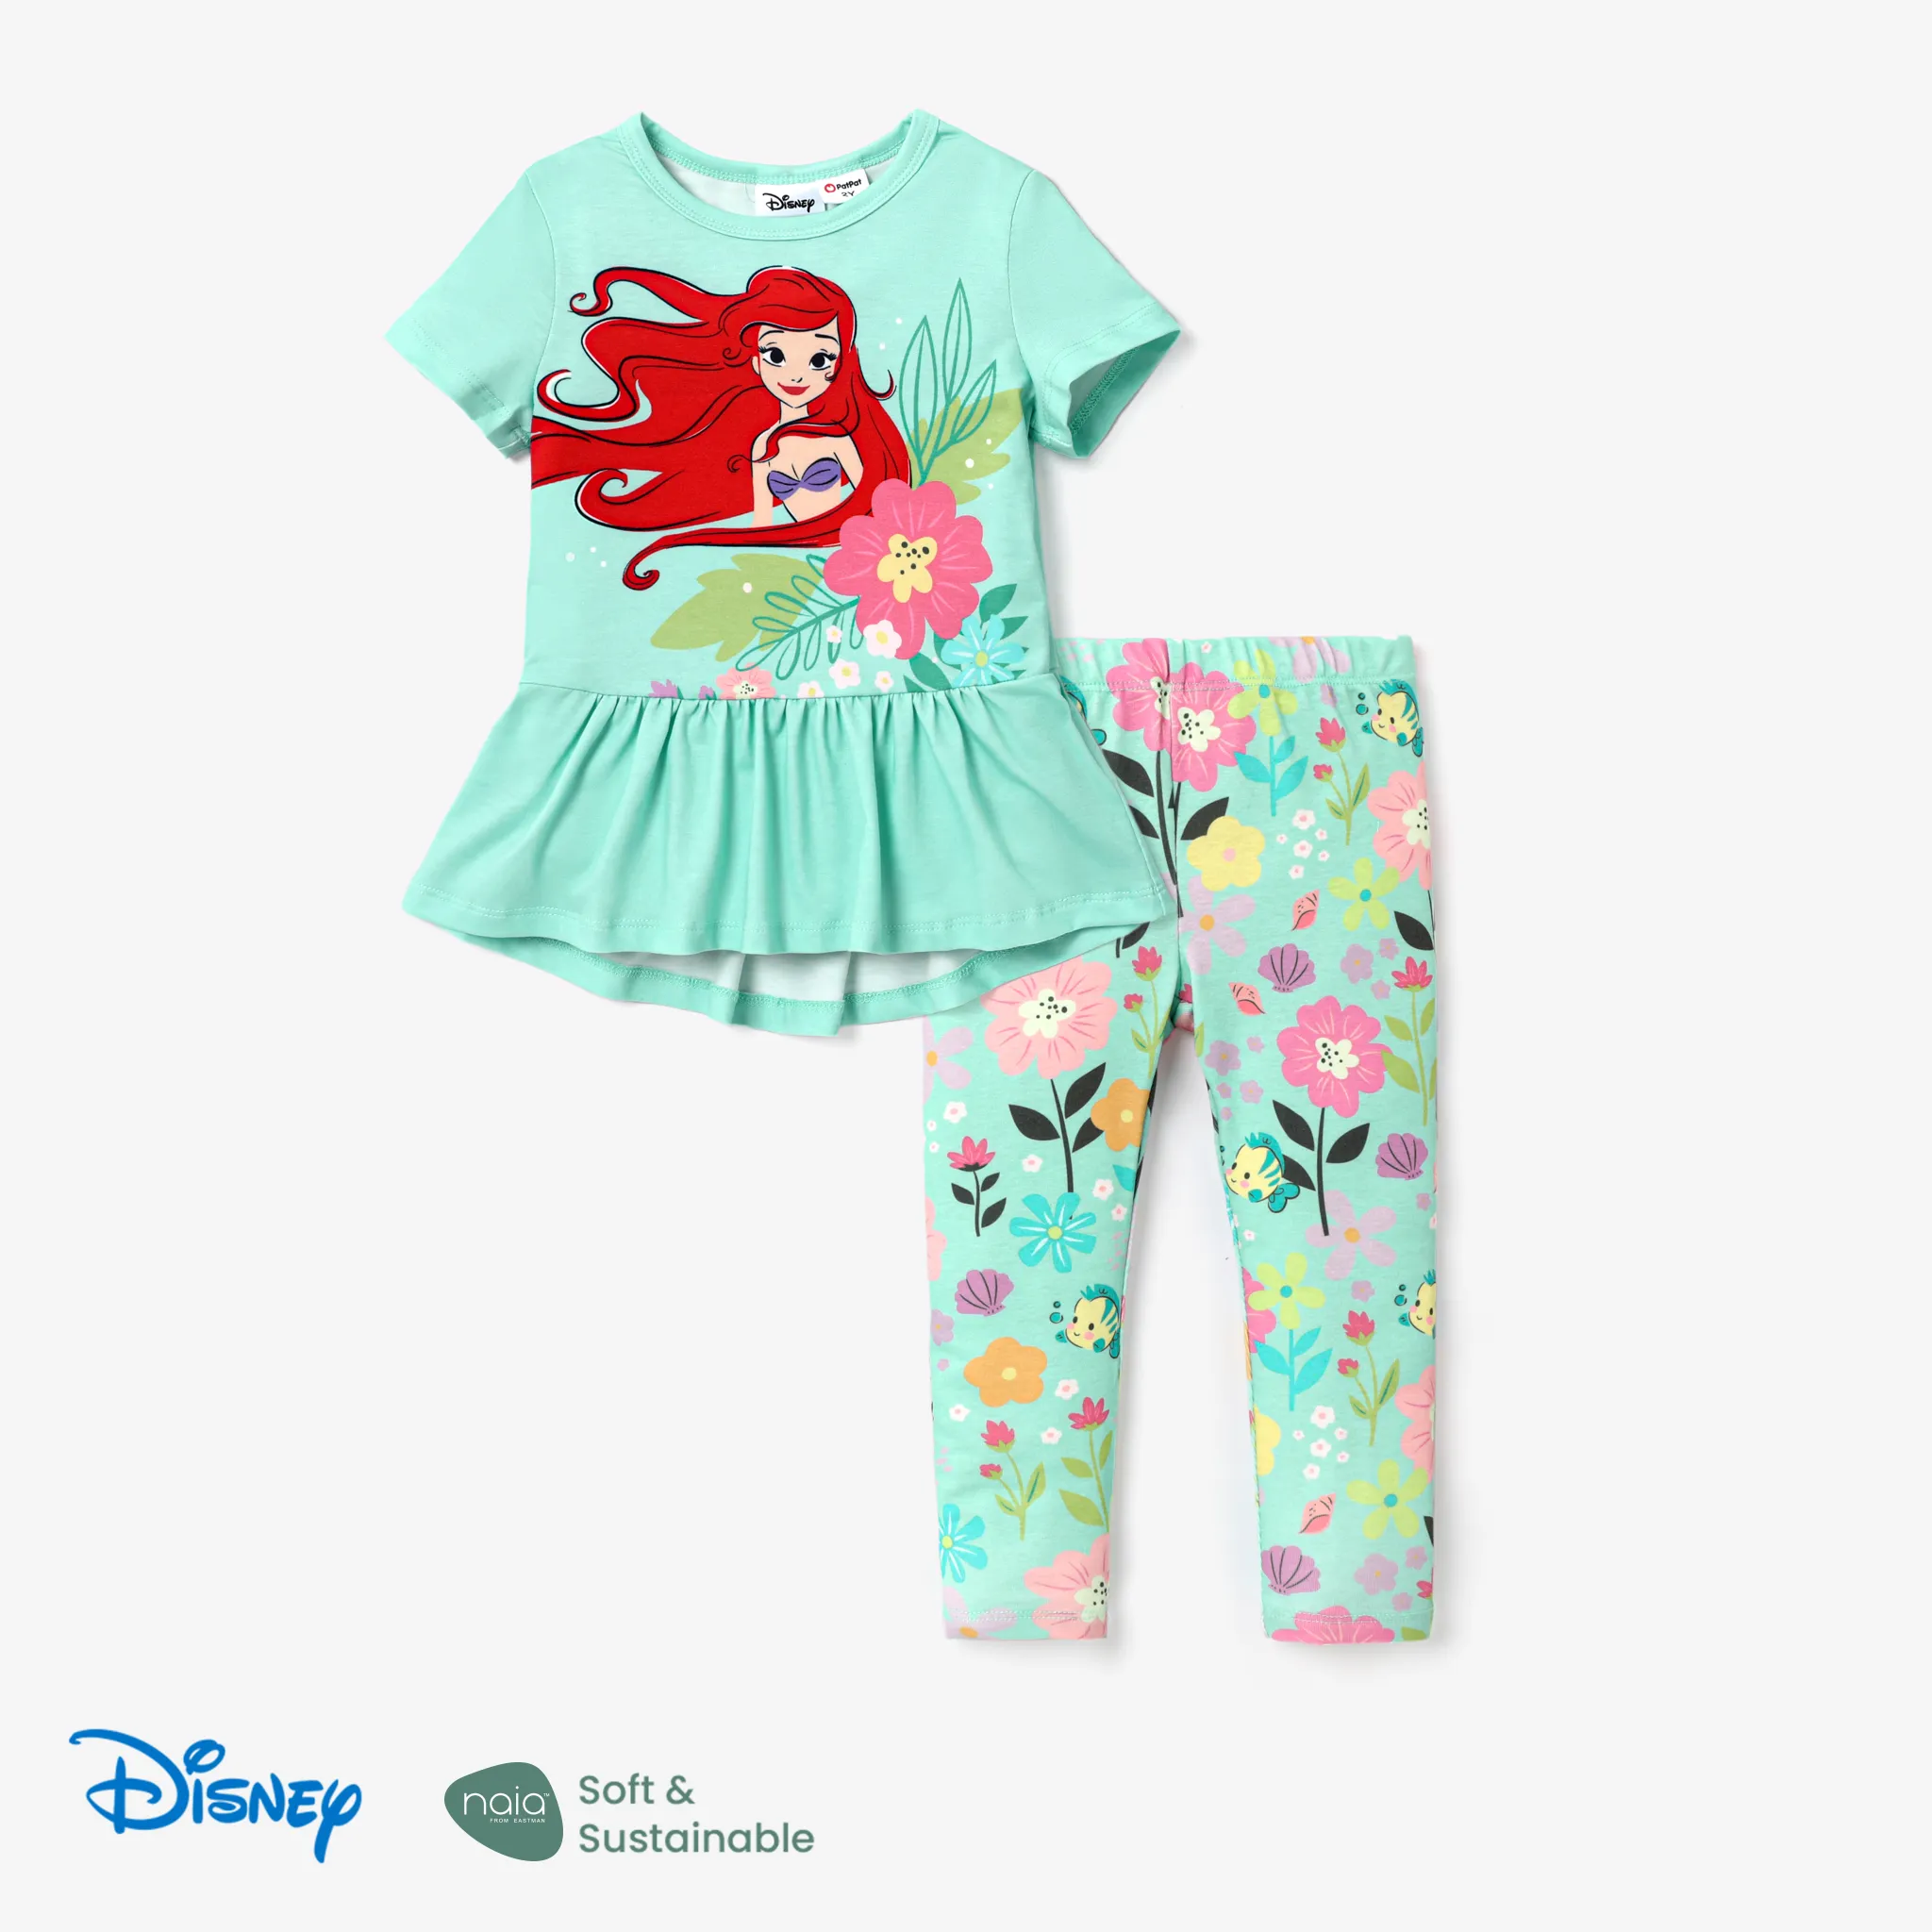 Disney Princess Toddler Girl 2pcs Naiaâ¢ Character Print Peplum Long-sleeve Tee And Floral Pants Set